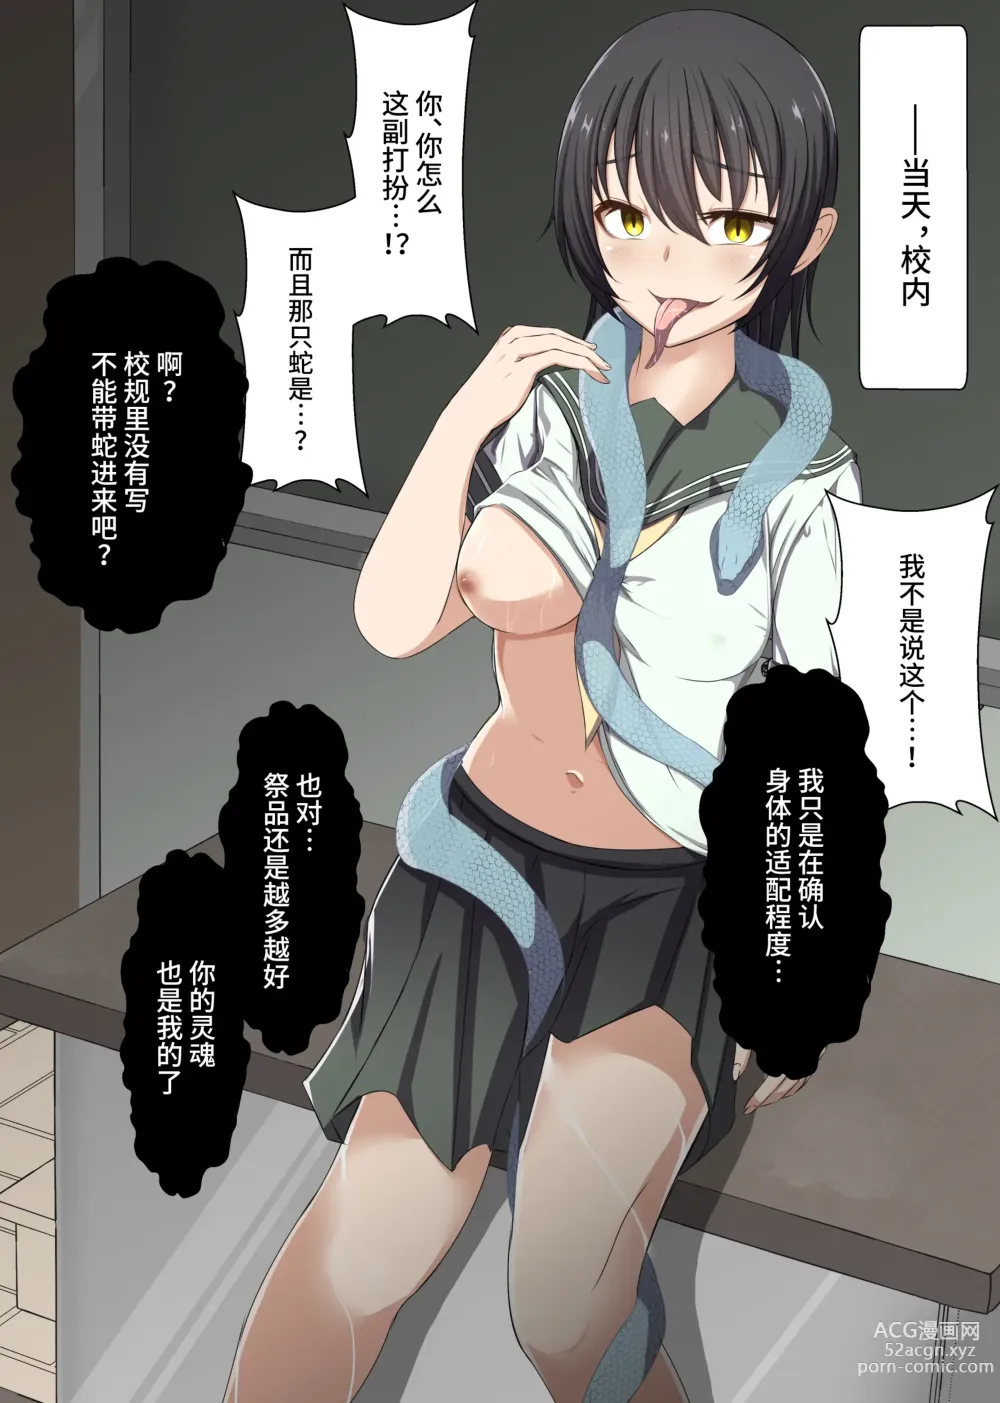 Page 8 of doujinshi Aku no Hana Vol.3 Skeb+α Matome